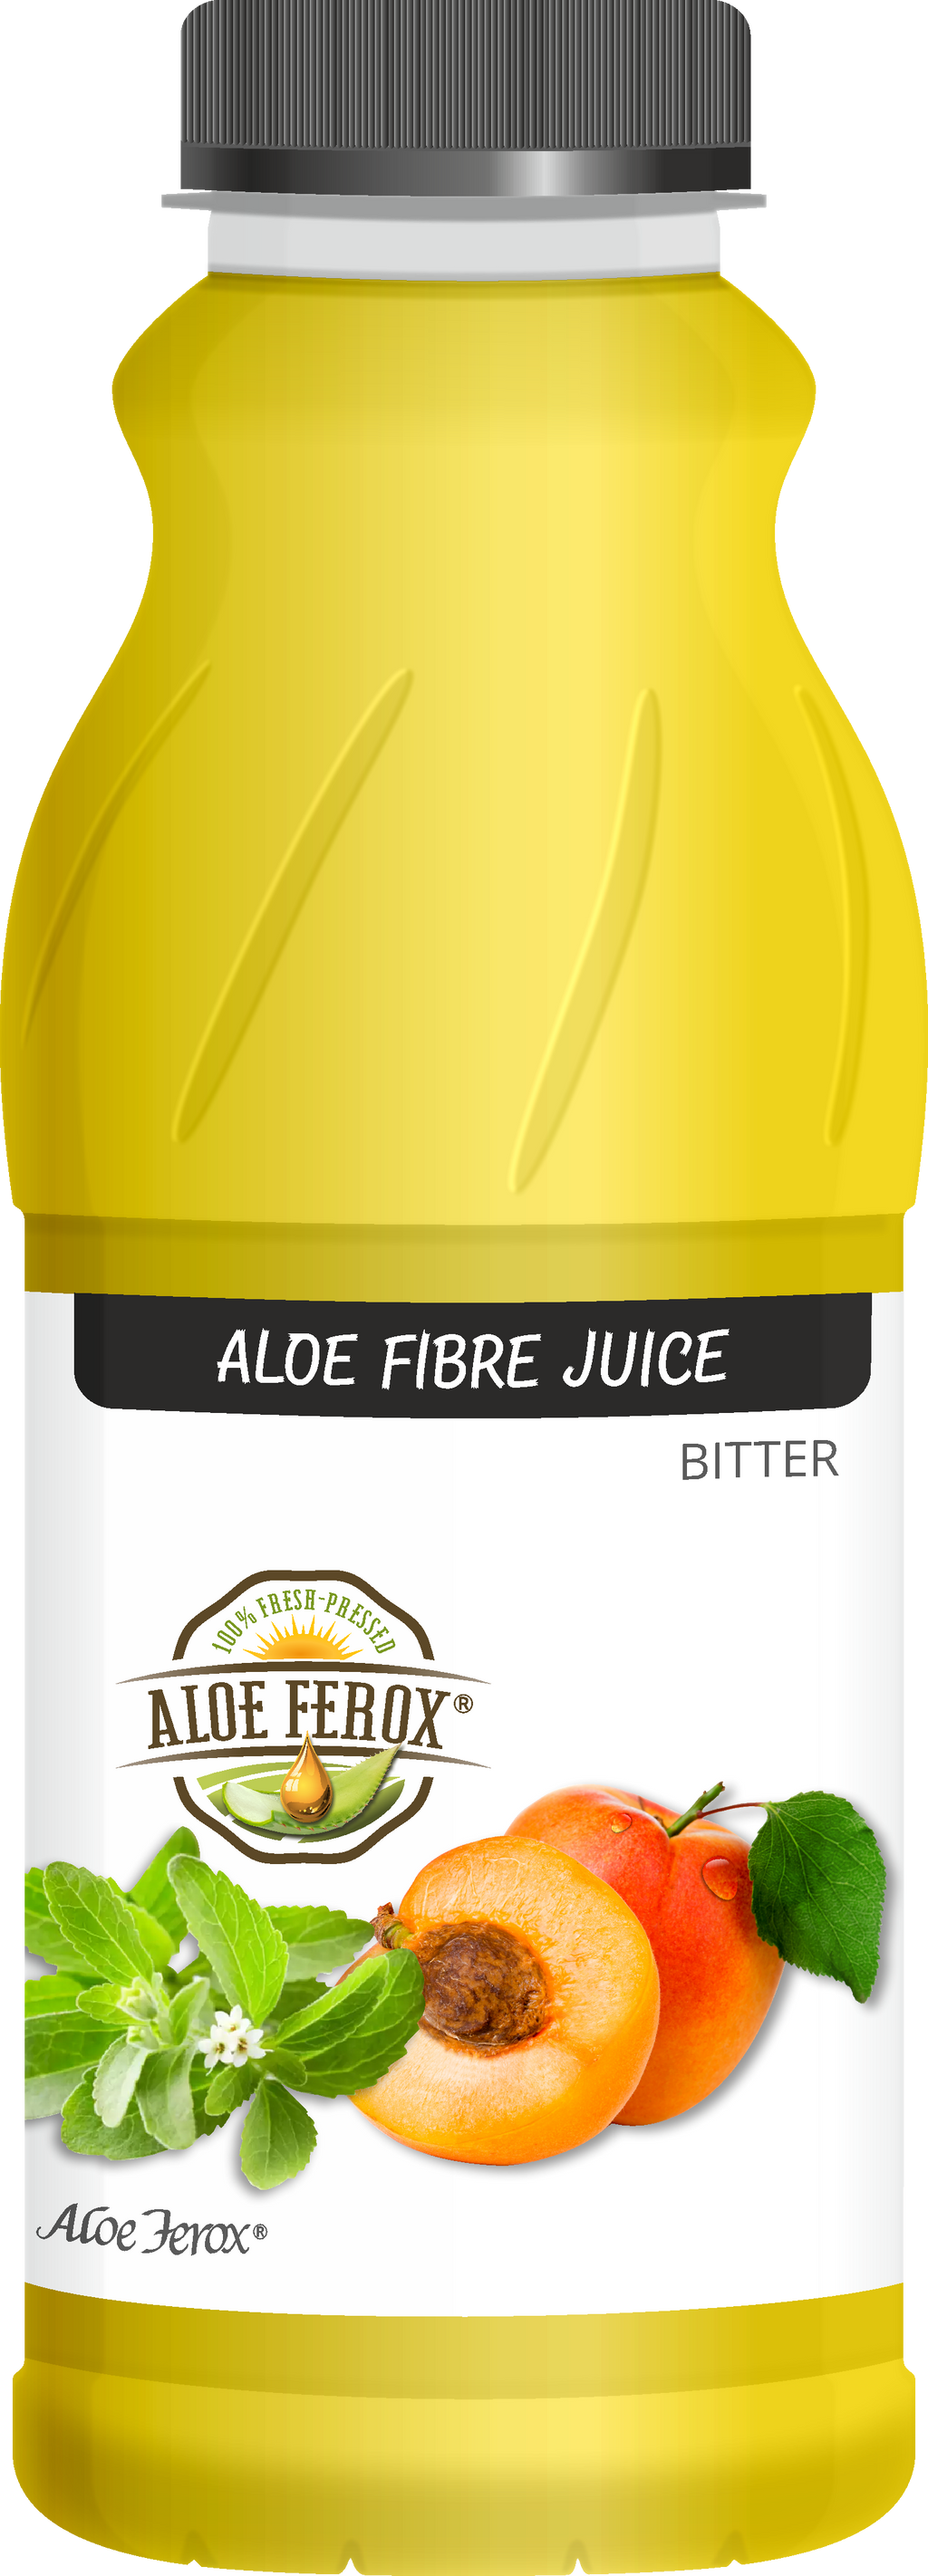 Aloe Fibre Juice Bitter